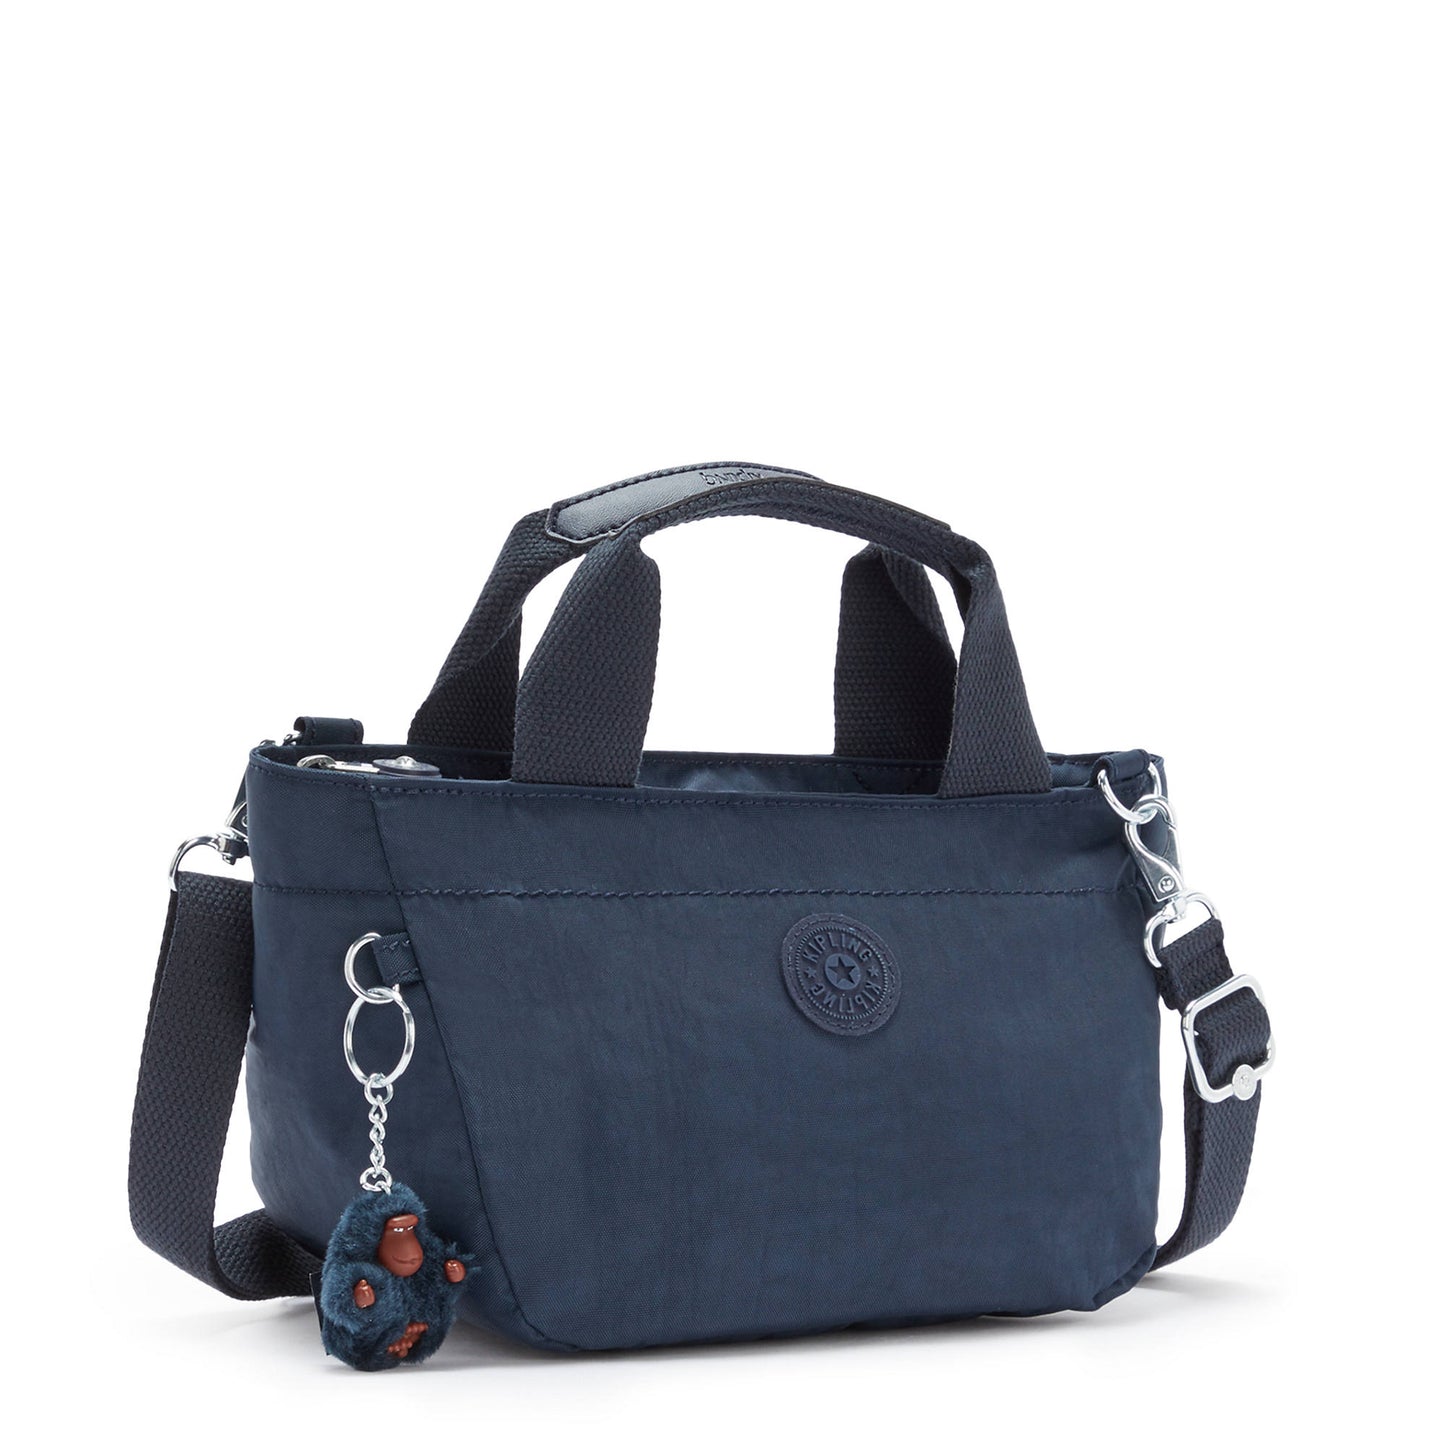 Bolsa Kipling Sugar S II Mini Crossbody Handbag Azul Marino